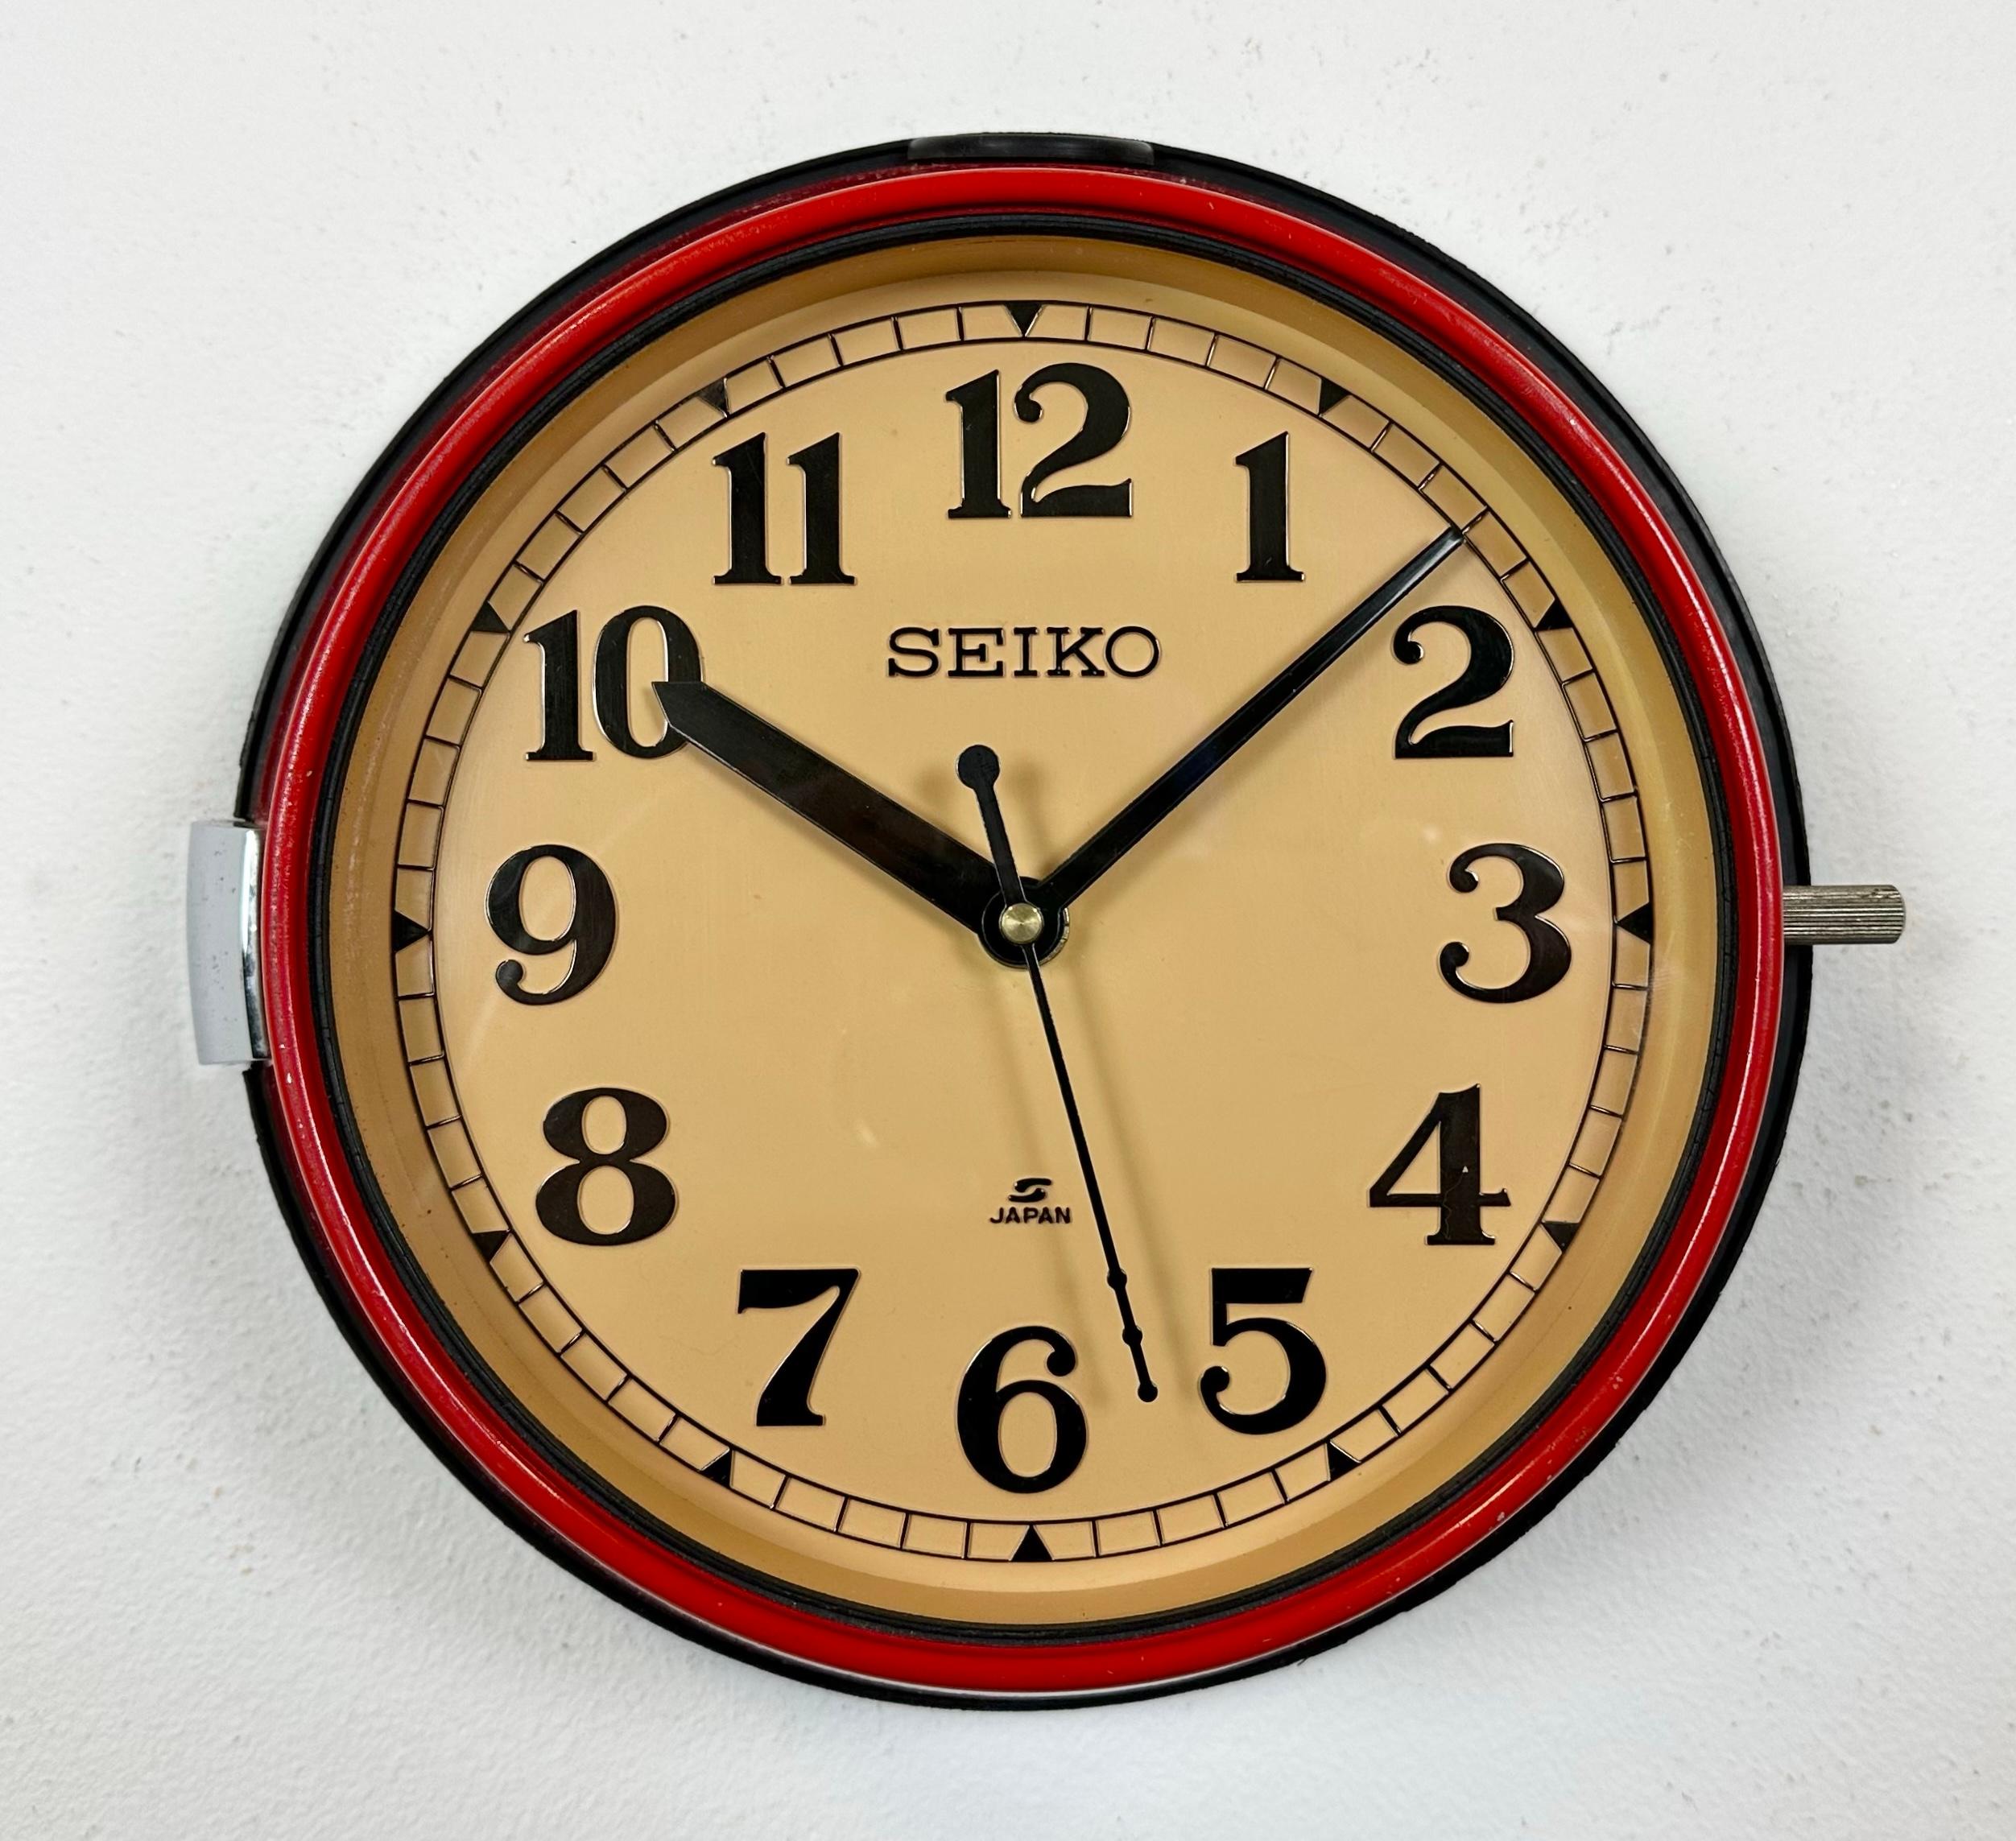 Vintage Seiko navy slave clock conçu dans les années 1970 et produit jusqu'aux années 1990. Ces horloges étaient utilisées sur les grands pétroliers et cargos japonais. Il comporte un cadre en métal rouge, un cadran en plastique et un couvercle en